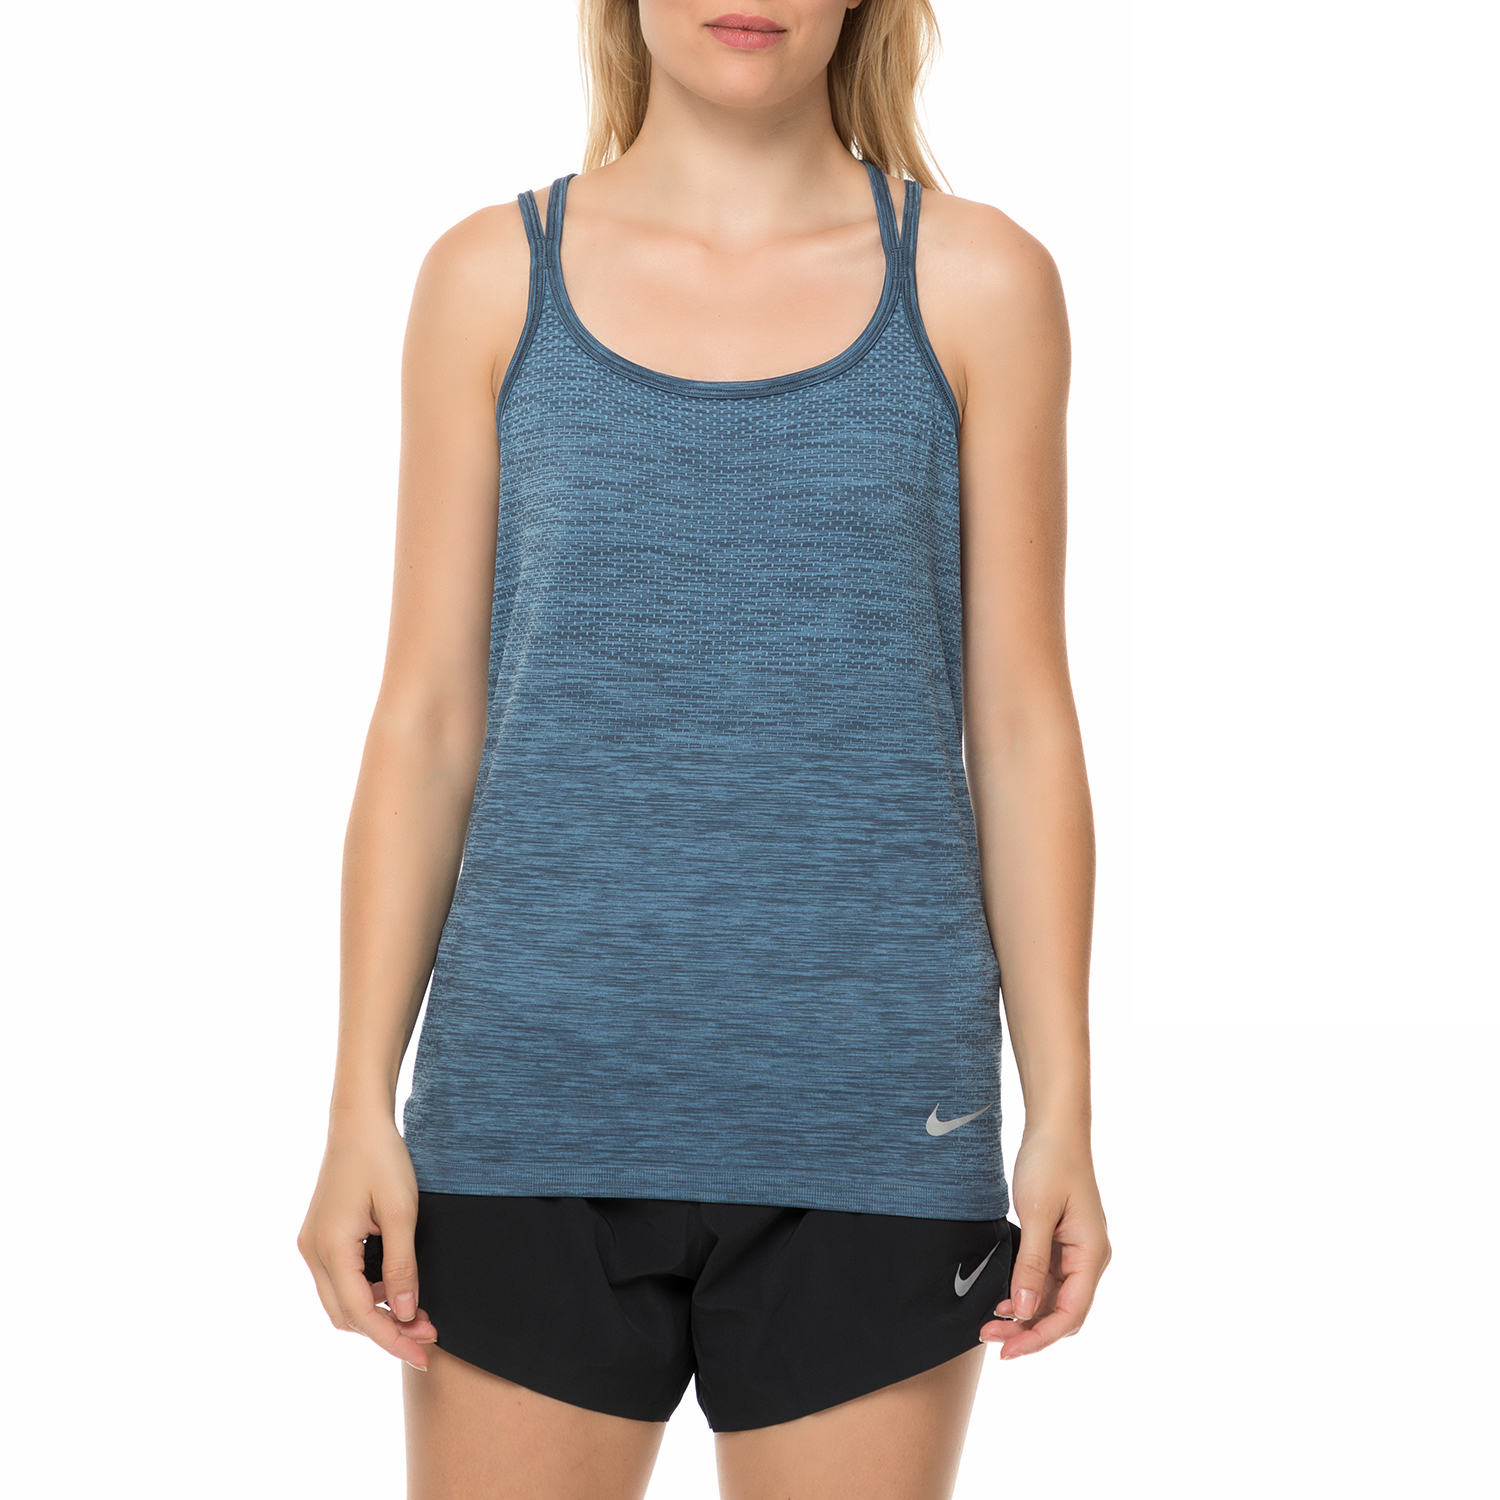 NIKE – Γυναικείο αθλητικό φανελάκι Nike γκρι-μπλε